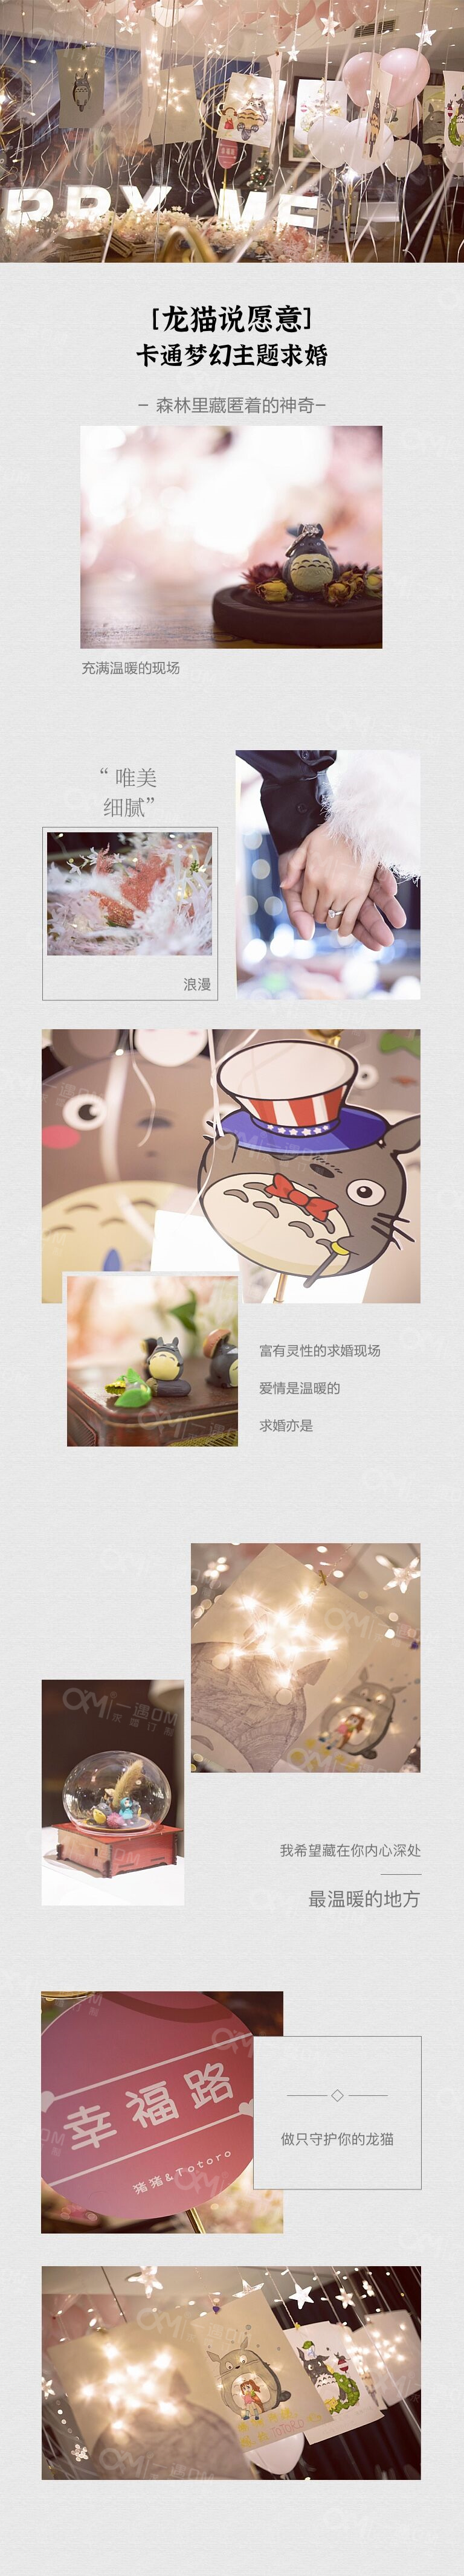 【龙猫说愿意】卡通梦幻主题求婚水印.jpg